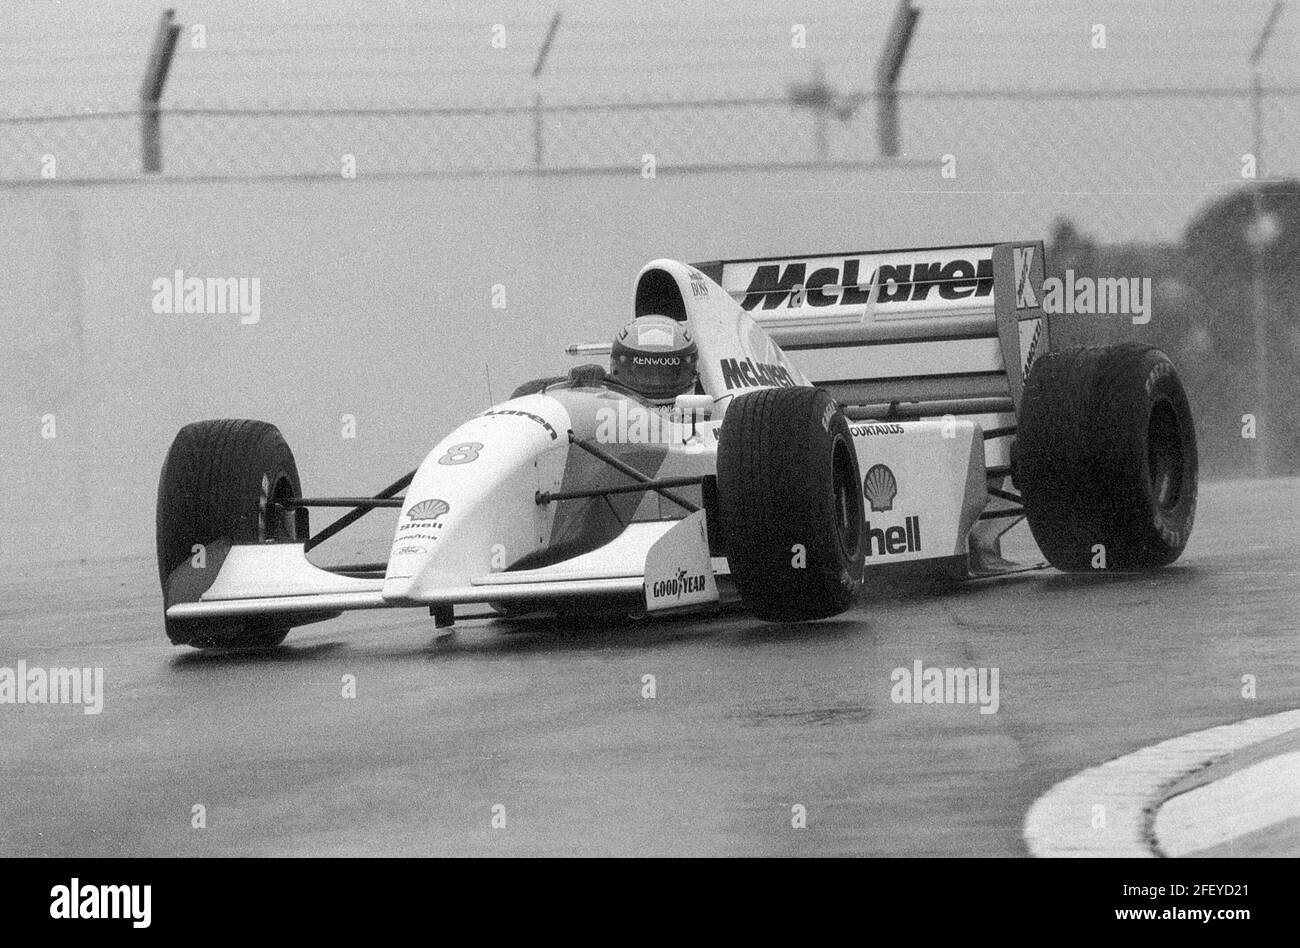 Ayrton Senna dans sa McLaren sur sa voie de la victoire au Grand Prix d'Europe 1993 de 1993 à Donington Park Angleterre. Banque D'Images